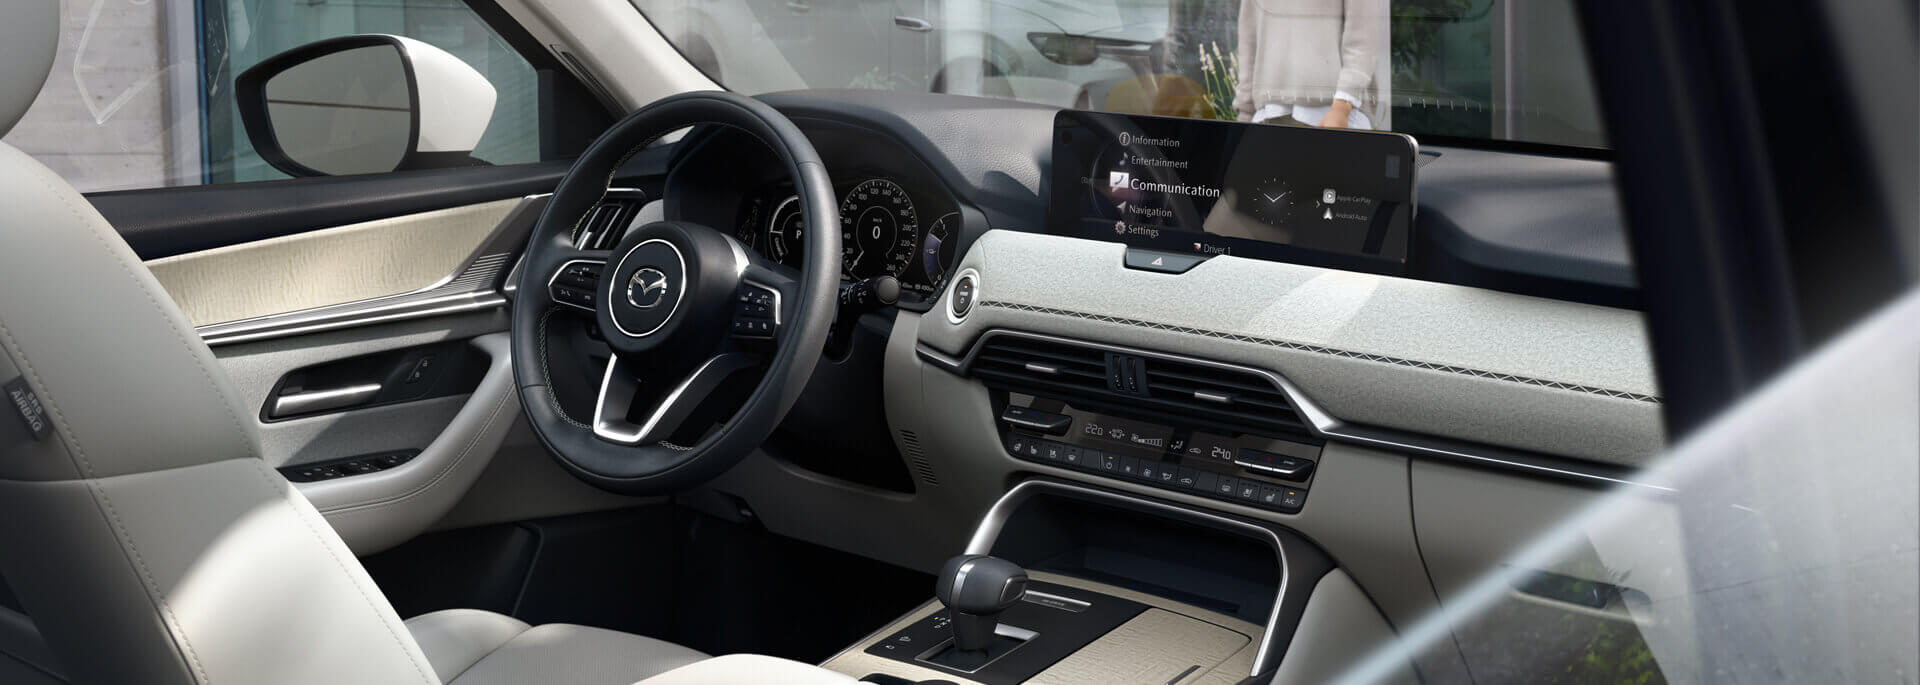 Das grosszügige Interieur des neuen Mazda CX-60 Plug-in-Hybrid-SUVs überzeugt durch japanische Handwerkskunst.